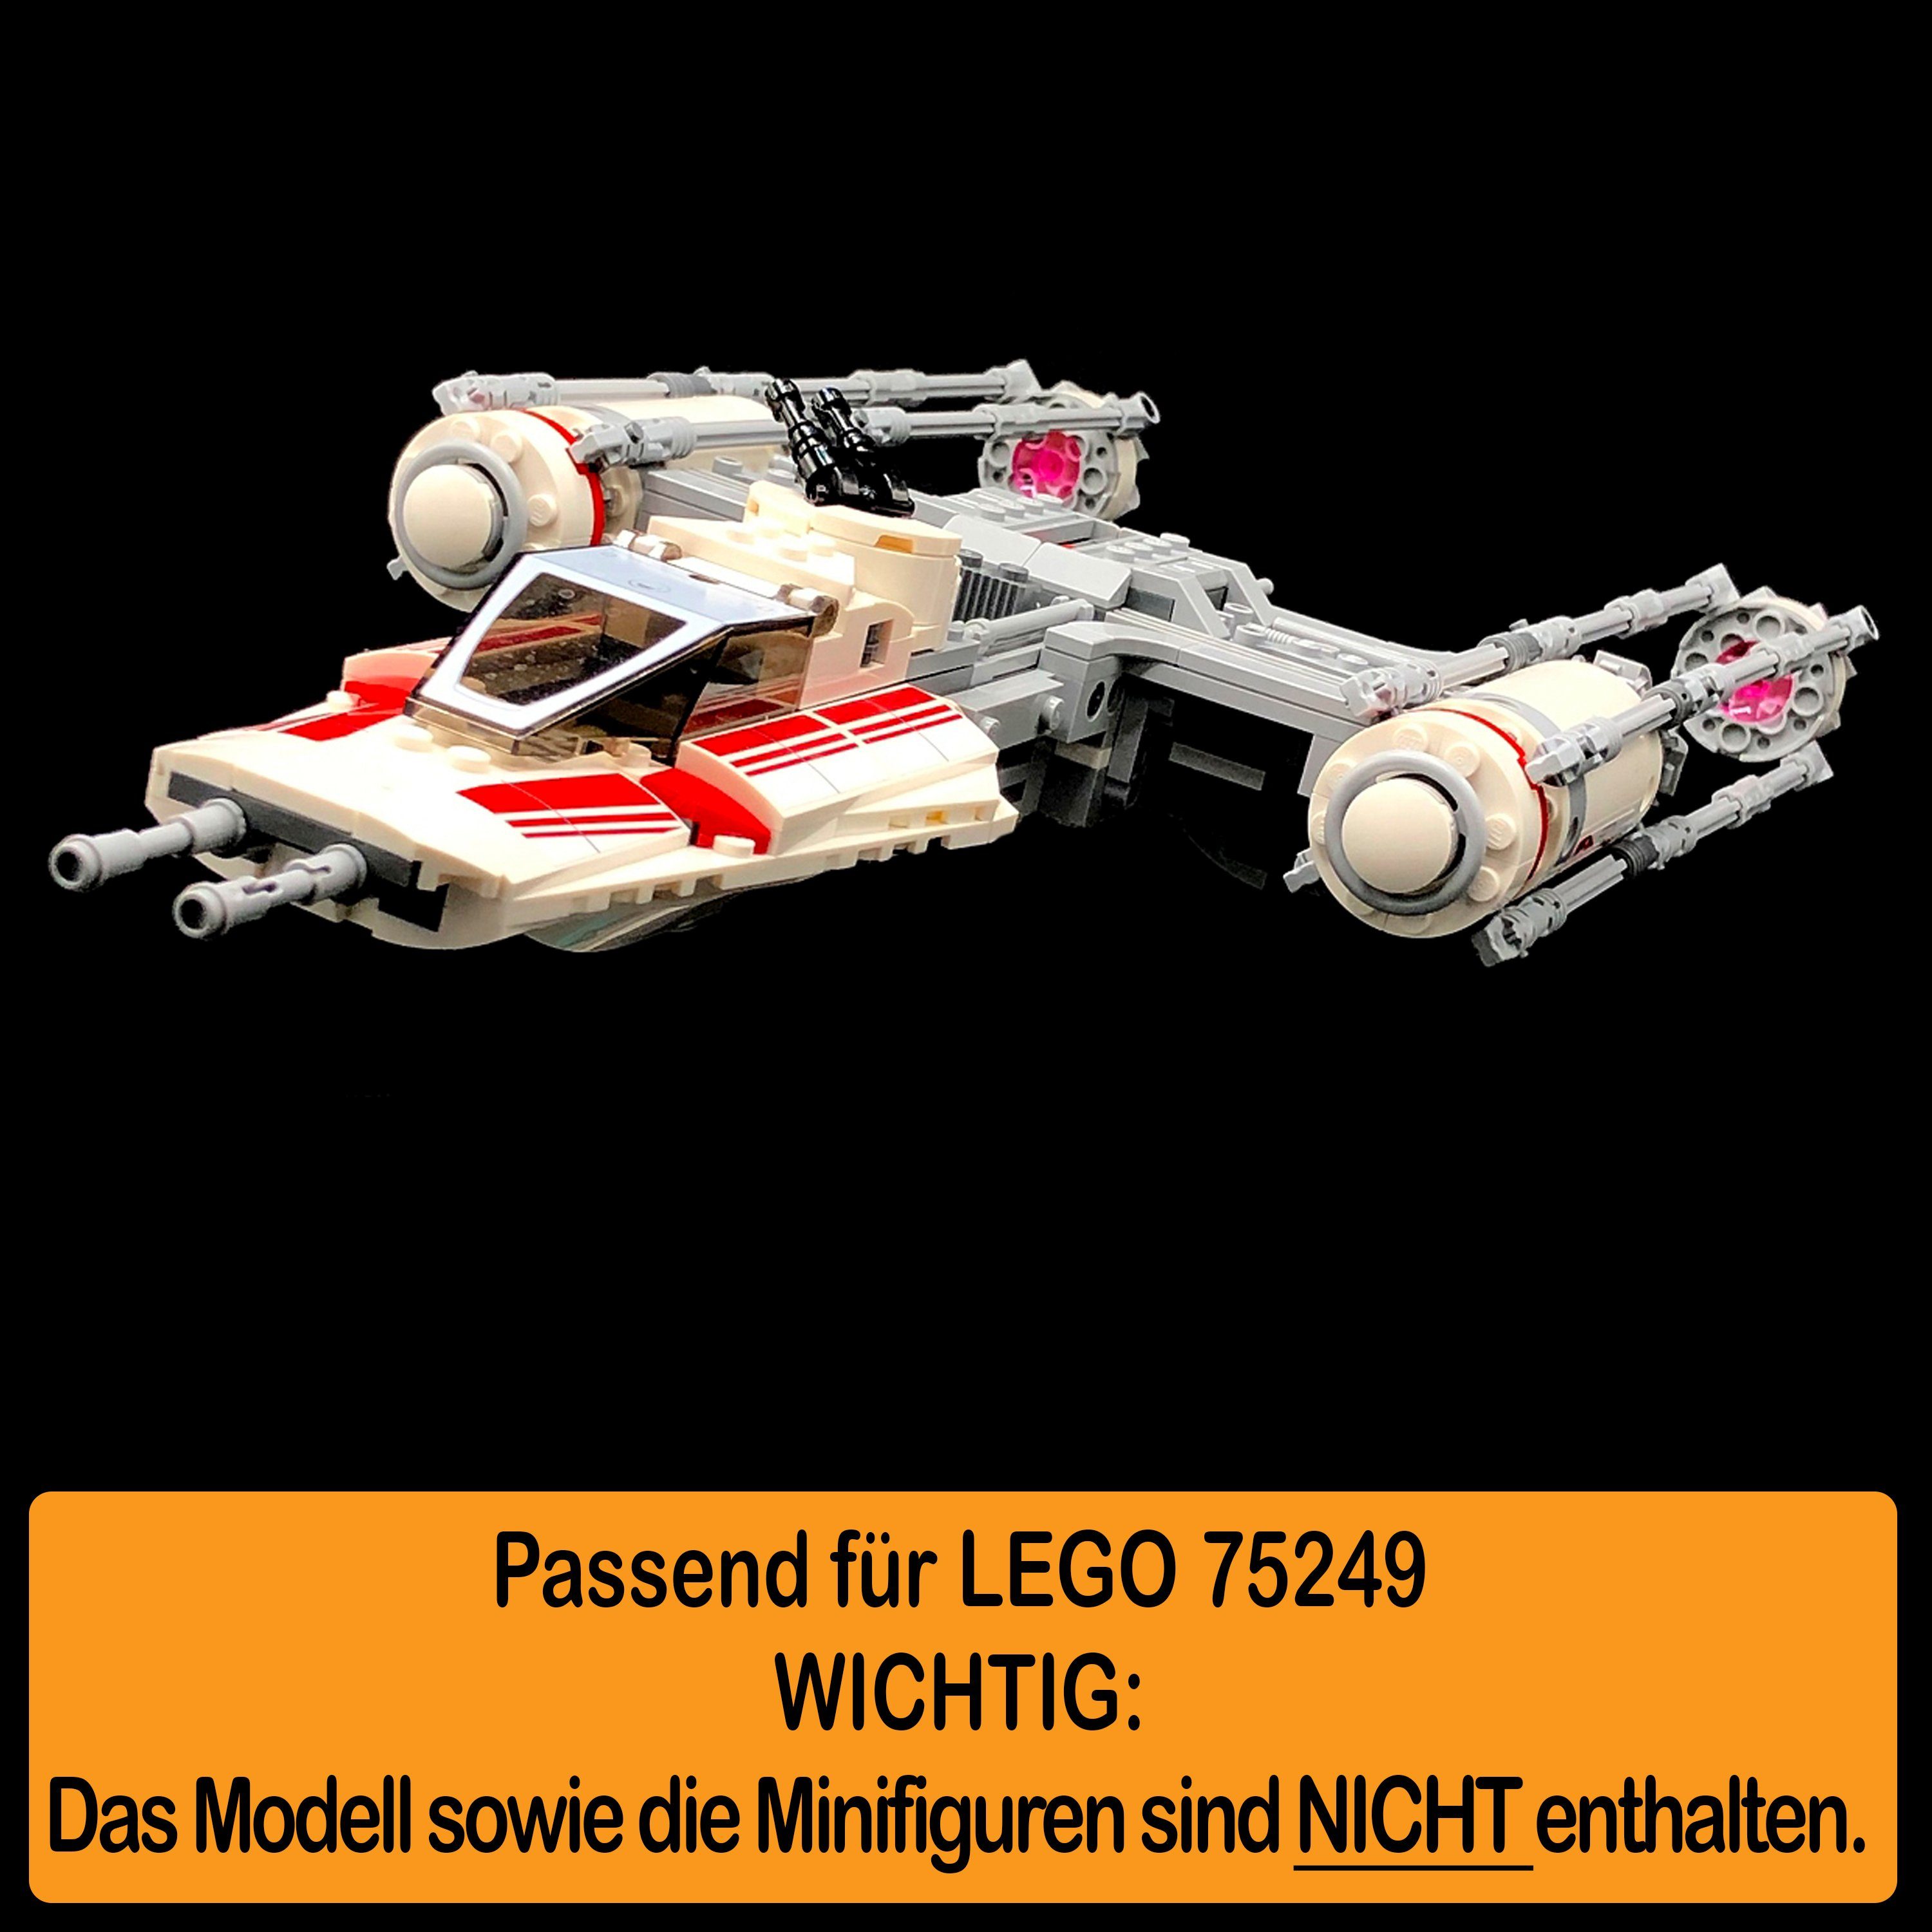 selbst einstellbar, zum 100% AREA17 Acryl Made zusammenbauen), für Y-Wing und Germany Standfuß LEGO Stand Starfighter Display in 75249 Winkel Positionen (verschiedene Resistance